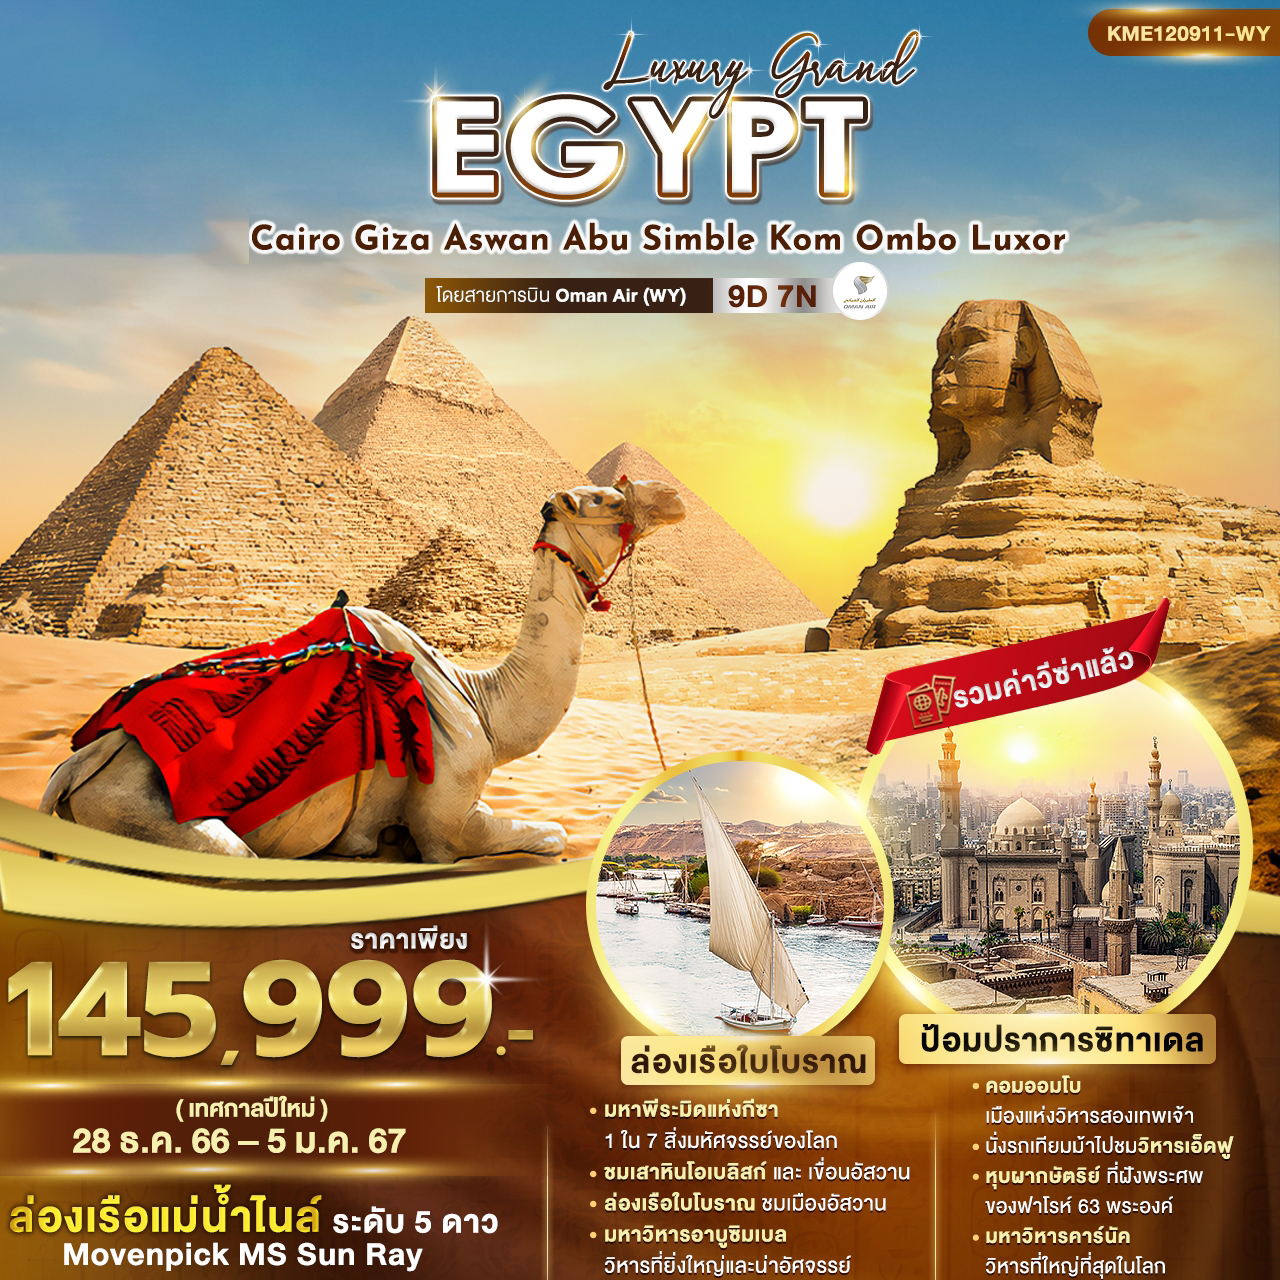 ทัวร์อียิปต์ Luxury Grand Egypt 9วัน 7คืน